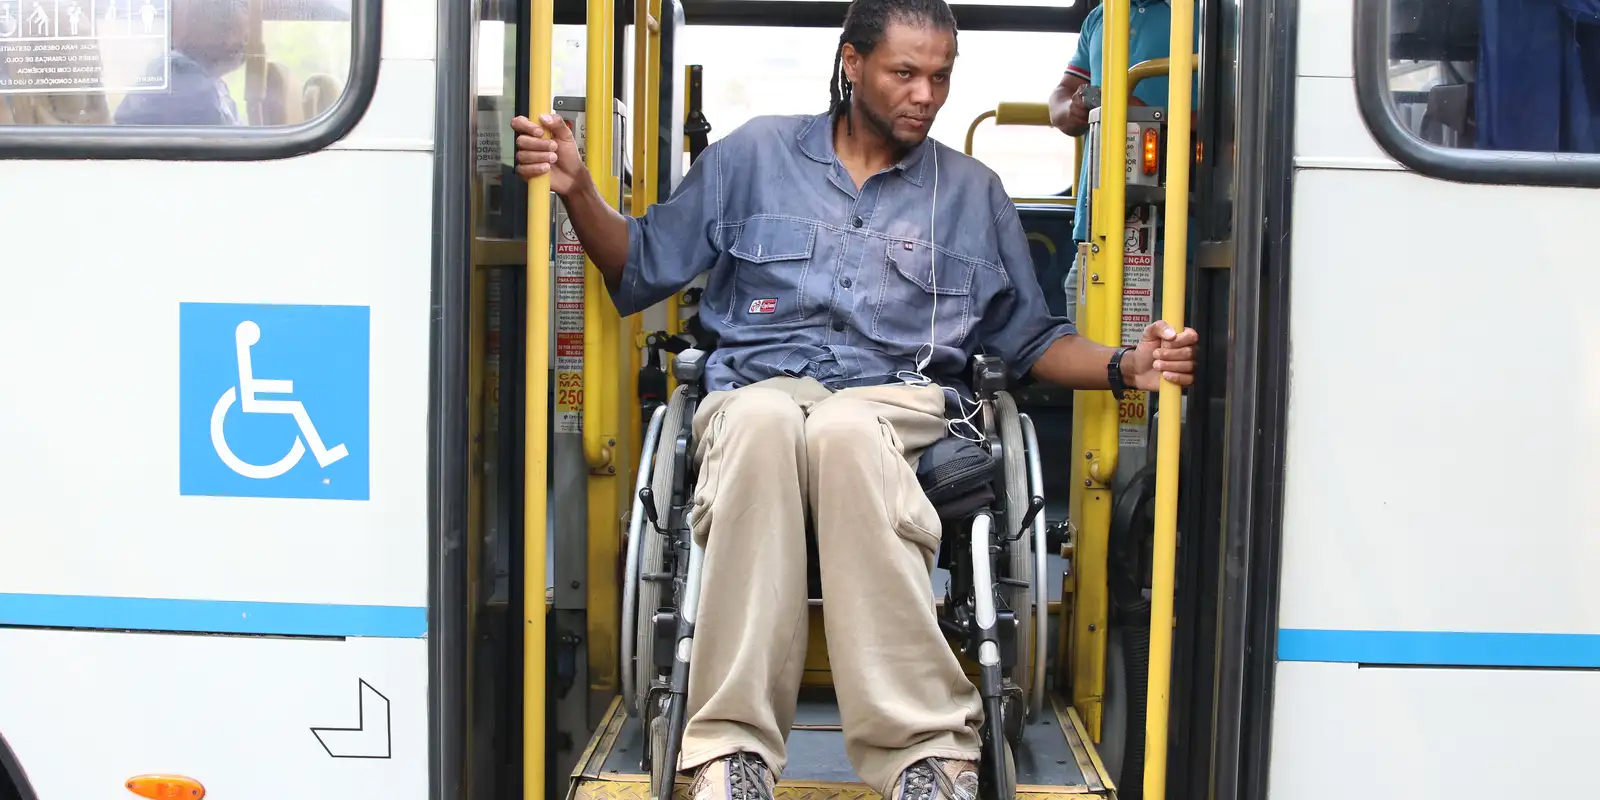 Sancionada lei que assegura direito ao transporte da pessoa com deficiência